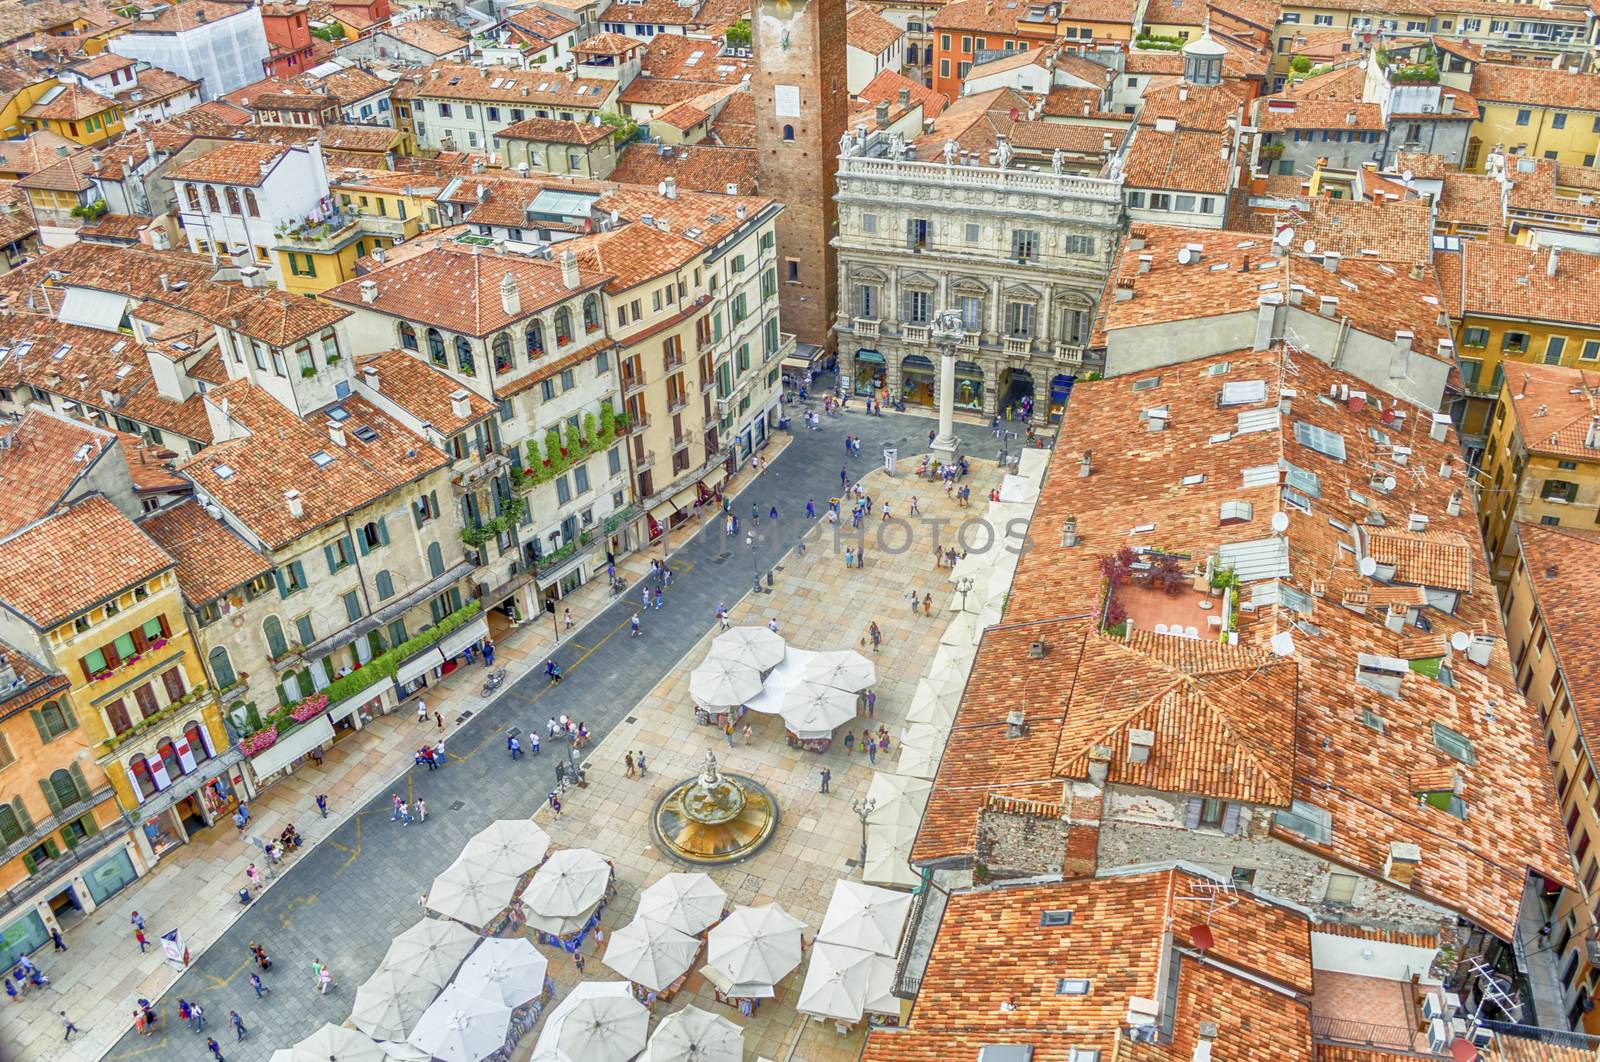 View over Piazza delle Erbe (Market's square), Verona by marcorubino